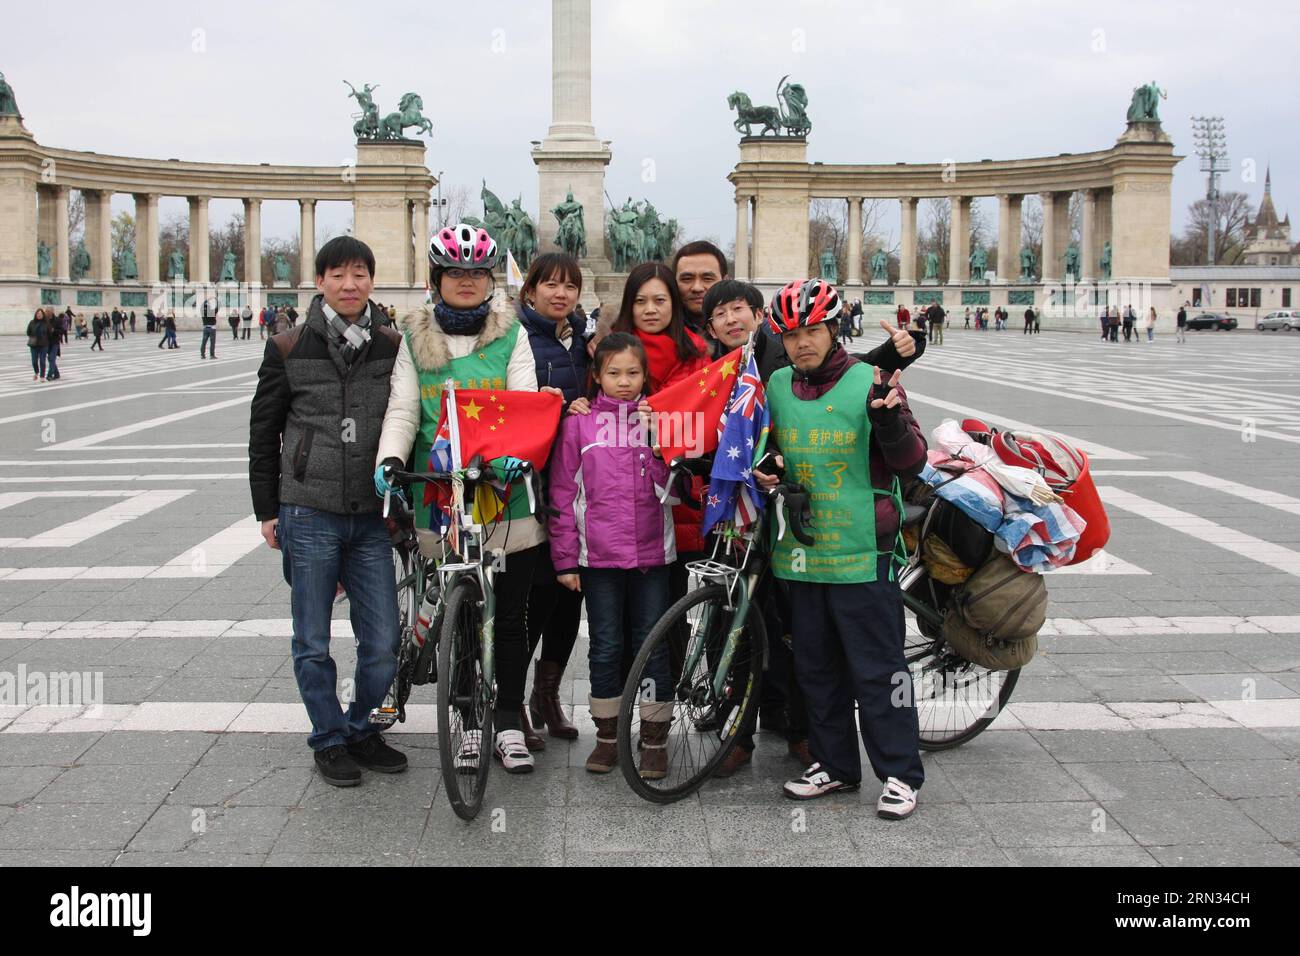 (150406) -- BUDAPEST, 6. April 2015 -- die chinesischen Globenradfahrer Lai Likun (1. R) und Zhang Hui (2. L) posieren am 6. April 2015 mit Chinesen aus Österreich auf dem Heldenplatz in Budapest, Ungarn. Lai und Zhang kamen am 4. April in Budapest an. Lai begann seine globale Radtour im Jahr 2009, während Zhang, ein Universitätsstudent in Peking, ihm letztes Jahr beitrat. Ungarn ist das 46. Land für Lai und das 23. Land für Zhang. )(zhf) UNGARN-BUDAPEST-CHINESE-GLOBE TRAB RADFAHRER YangxYongqian PUBLICATIONxNOTxINxCHN Budapest 6. April 2015 Chinese Globe Trab Radfahrer Lai 1st r und Z Stockfoto